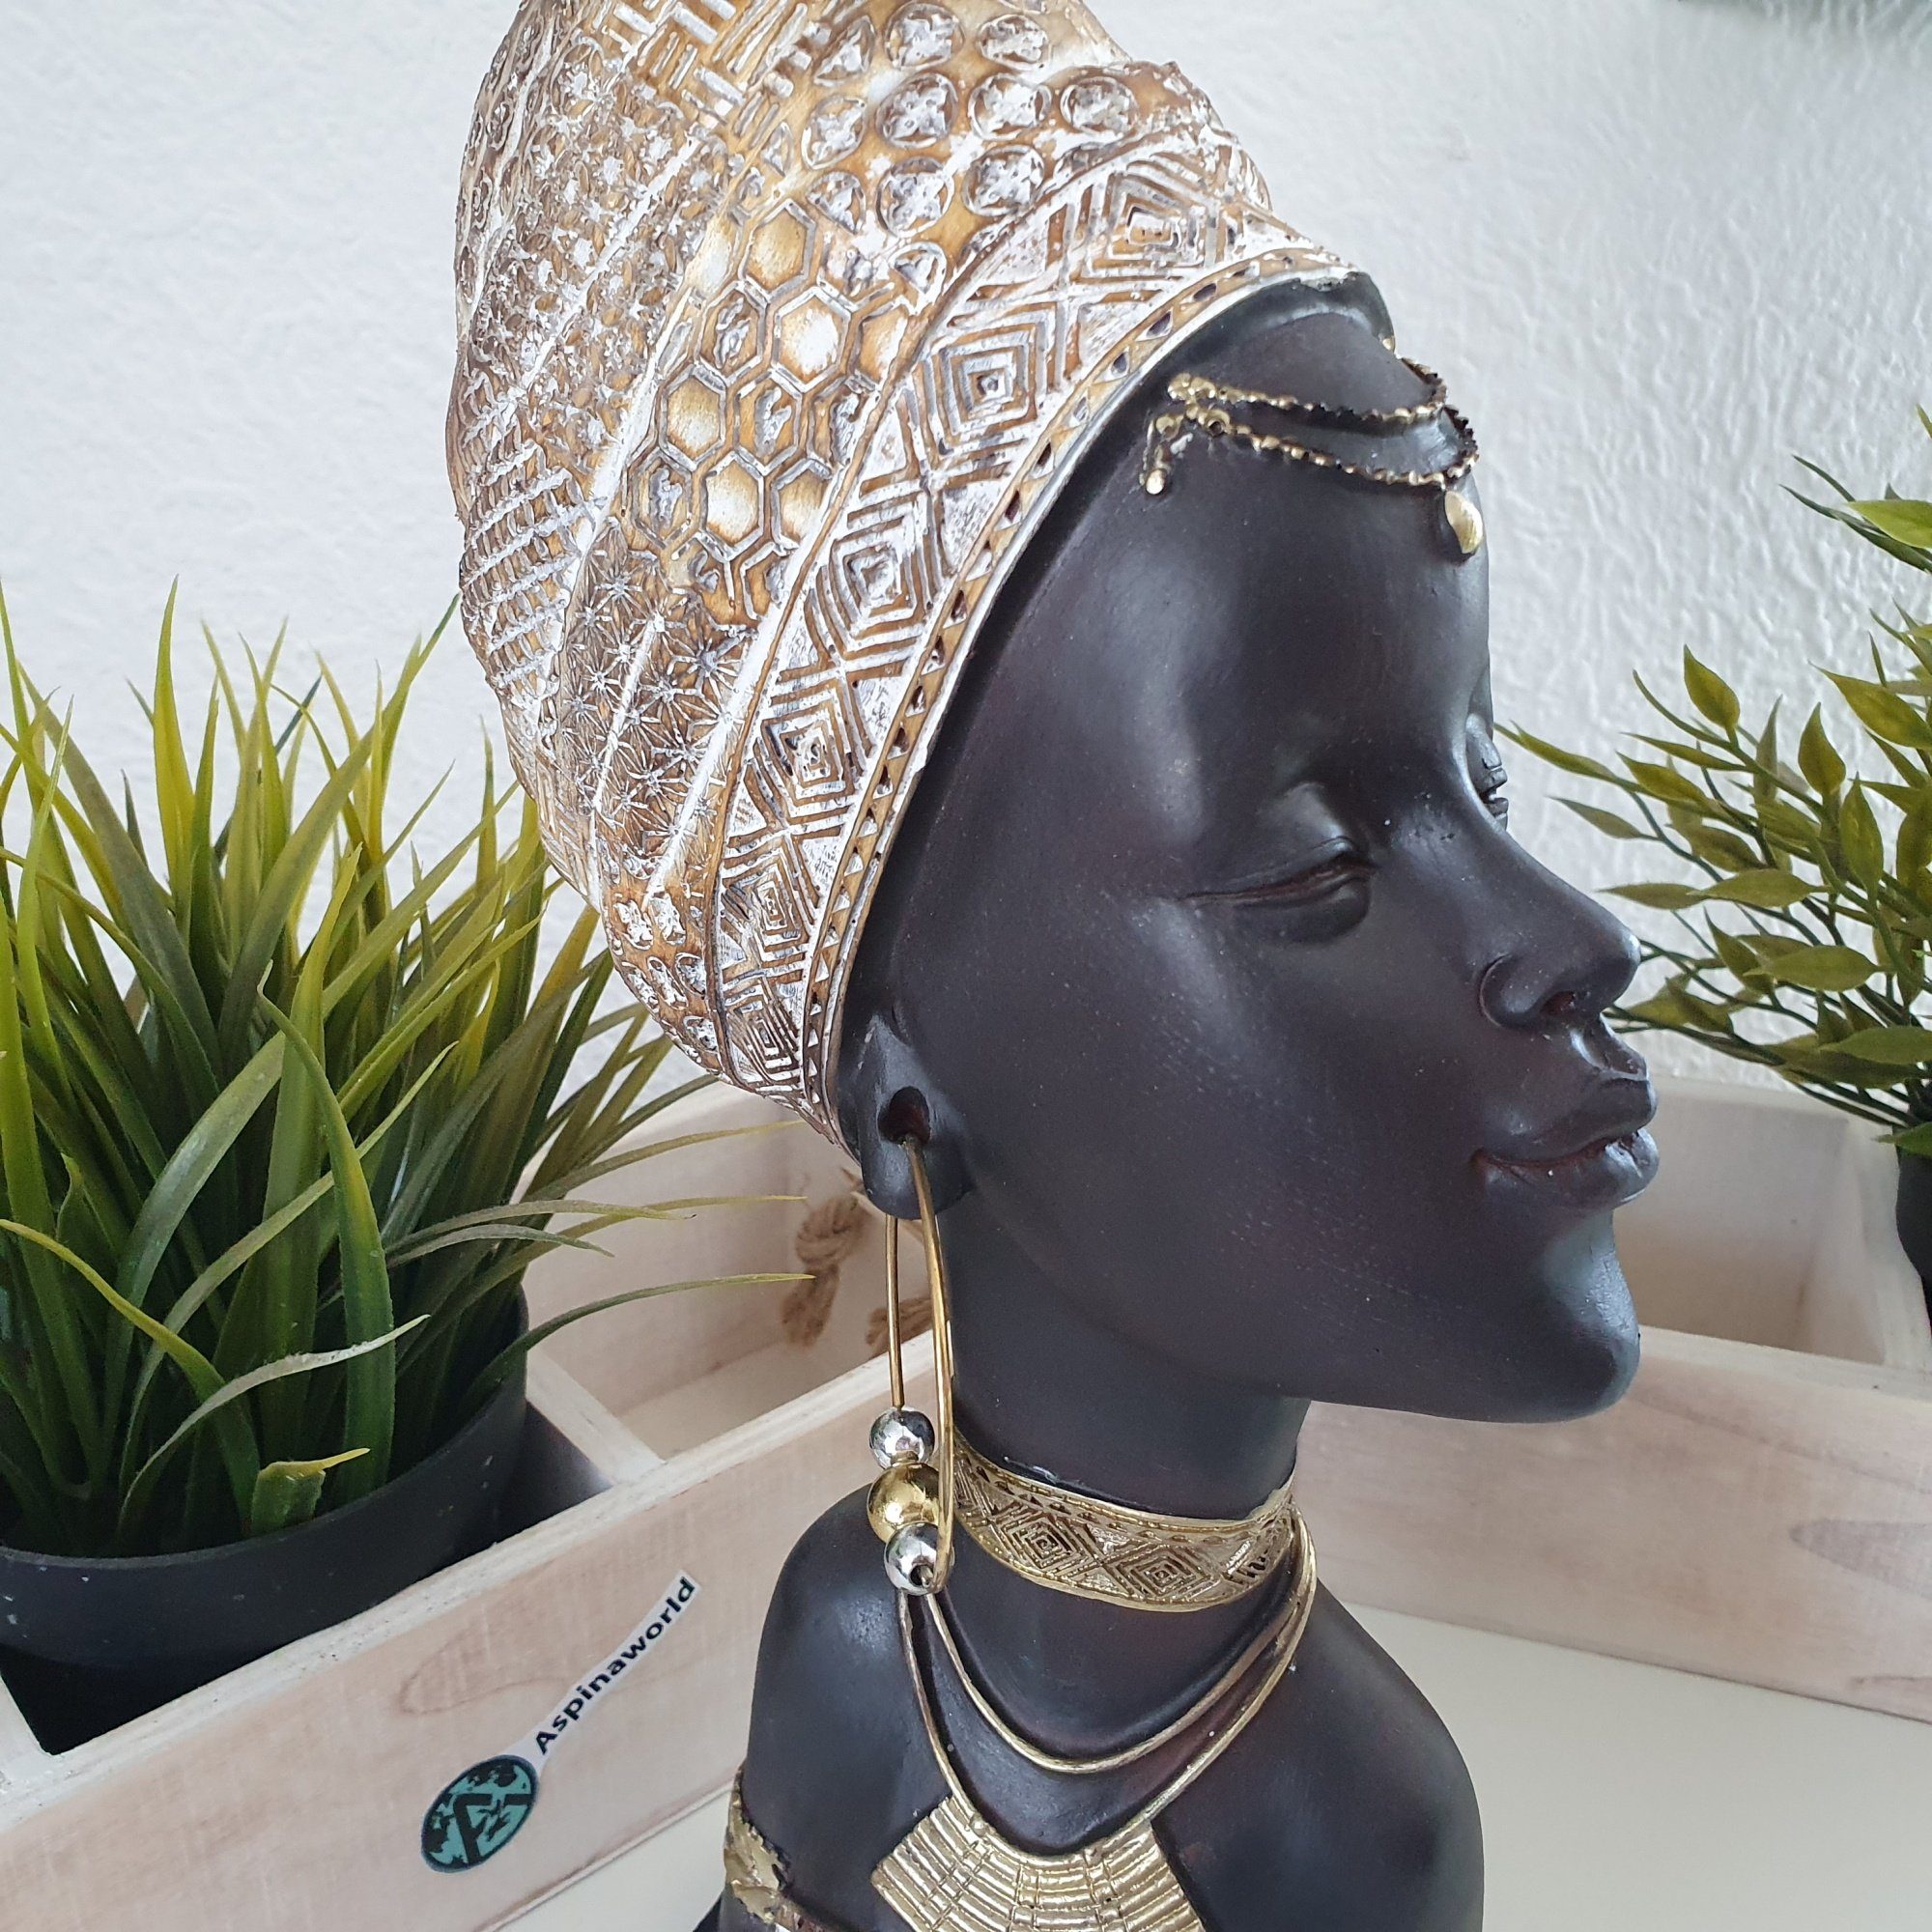 Frauenbüste Aspinaworld mit Dekofigur cm 30 Afrikanische Kopftuch Dekofigur